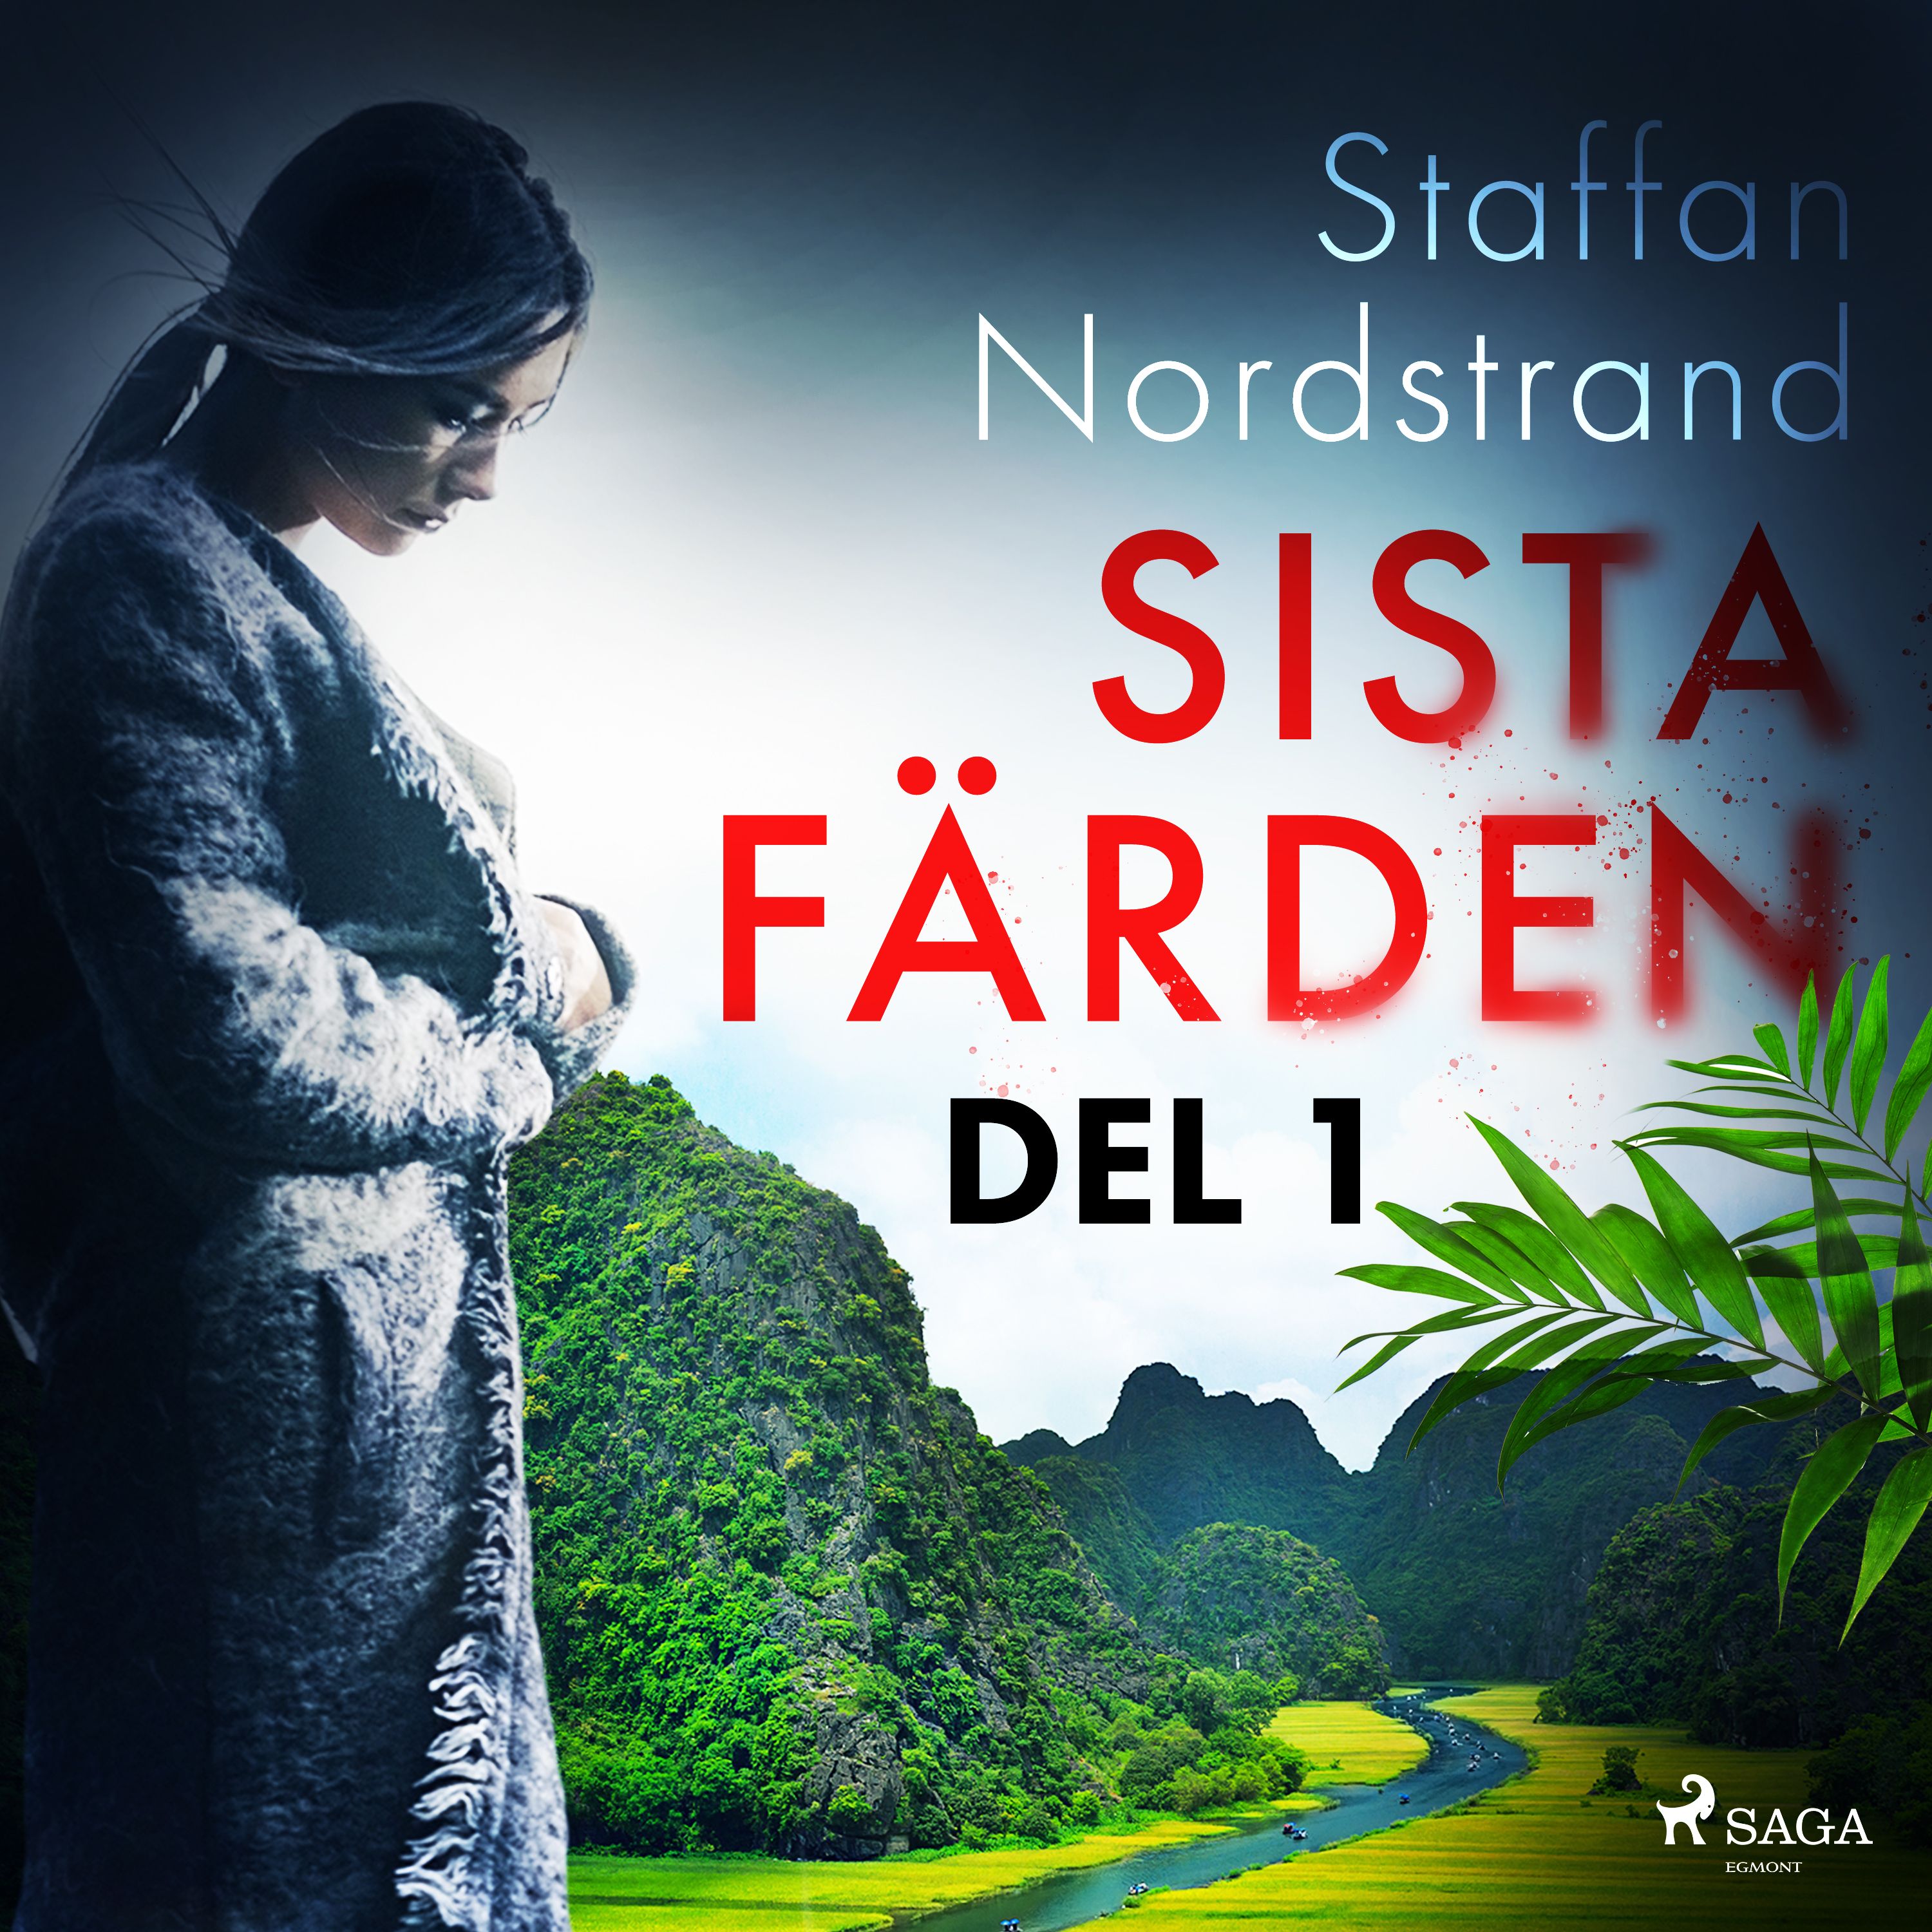 Sista färden - del 1, audiobook by Staffan Nordstrand